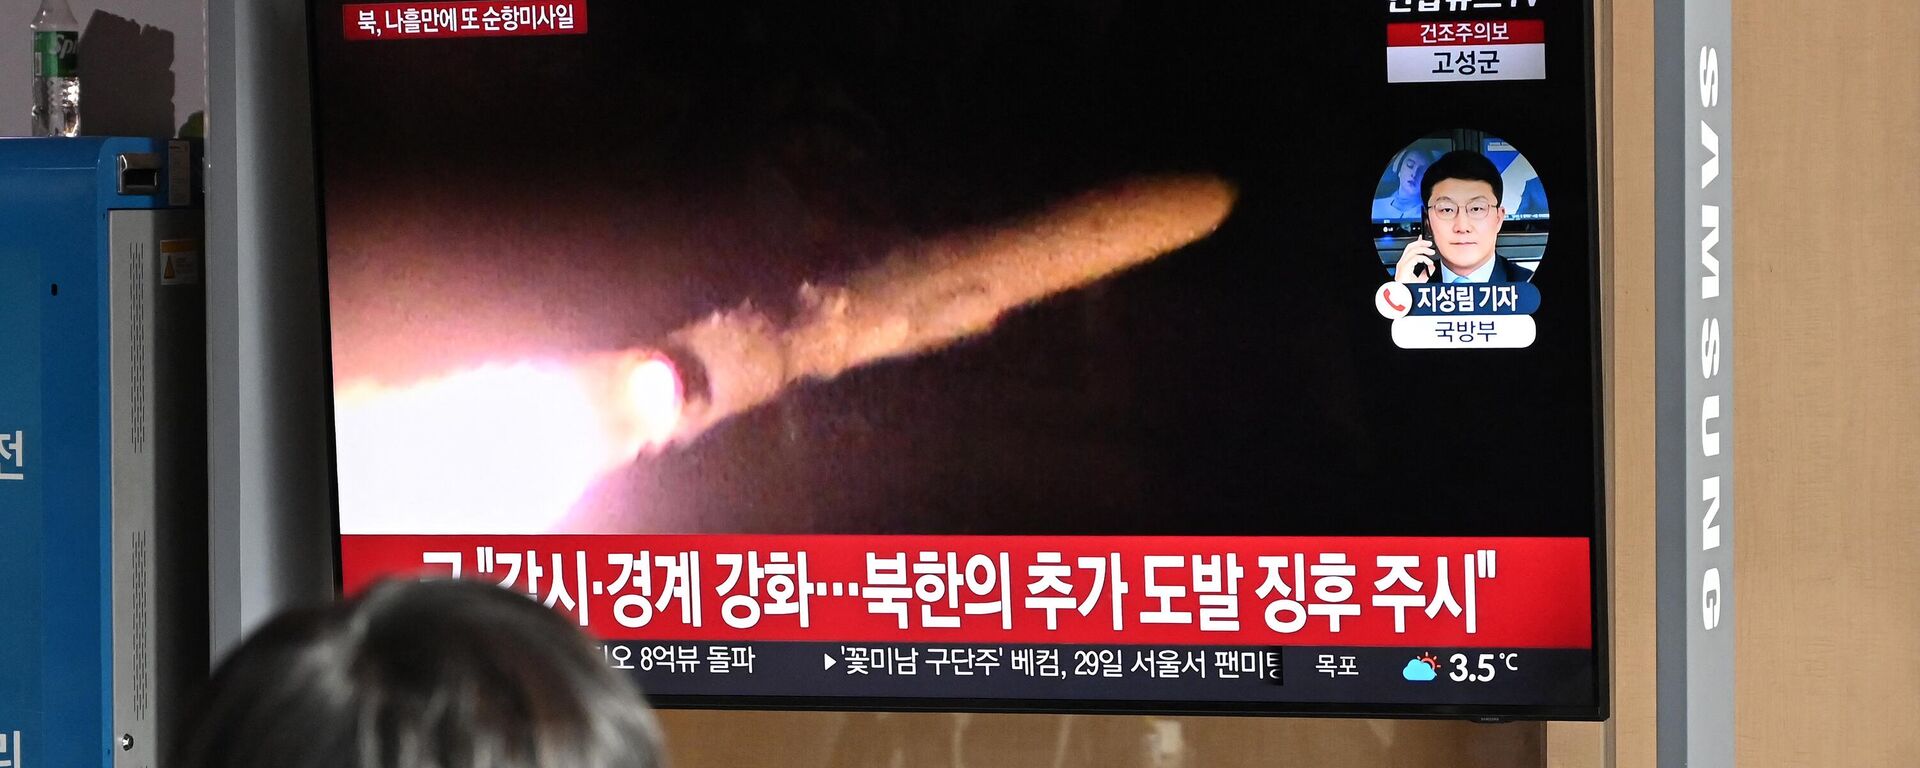 Un hombre observa una pantalla de televisión que muestra un noticiario con imágenes de archivo de una prueba de misiles norcoreana, el 28 de enero de 2024. Corea del Norte disparó varios misiles de crucero el 28 de enero  - Sputnik Mundo, 1920, 31.01.2024